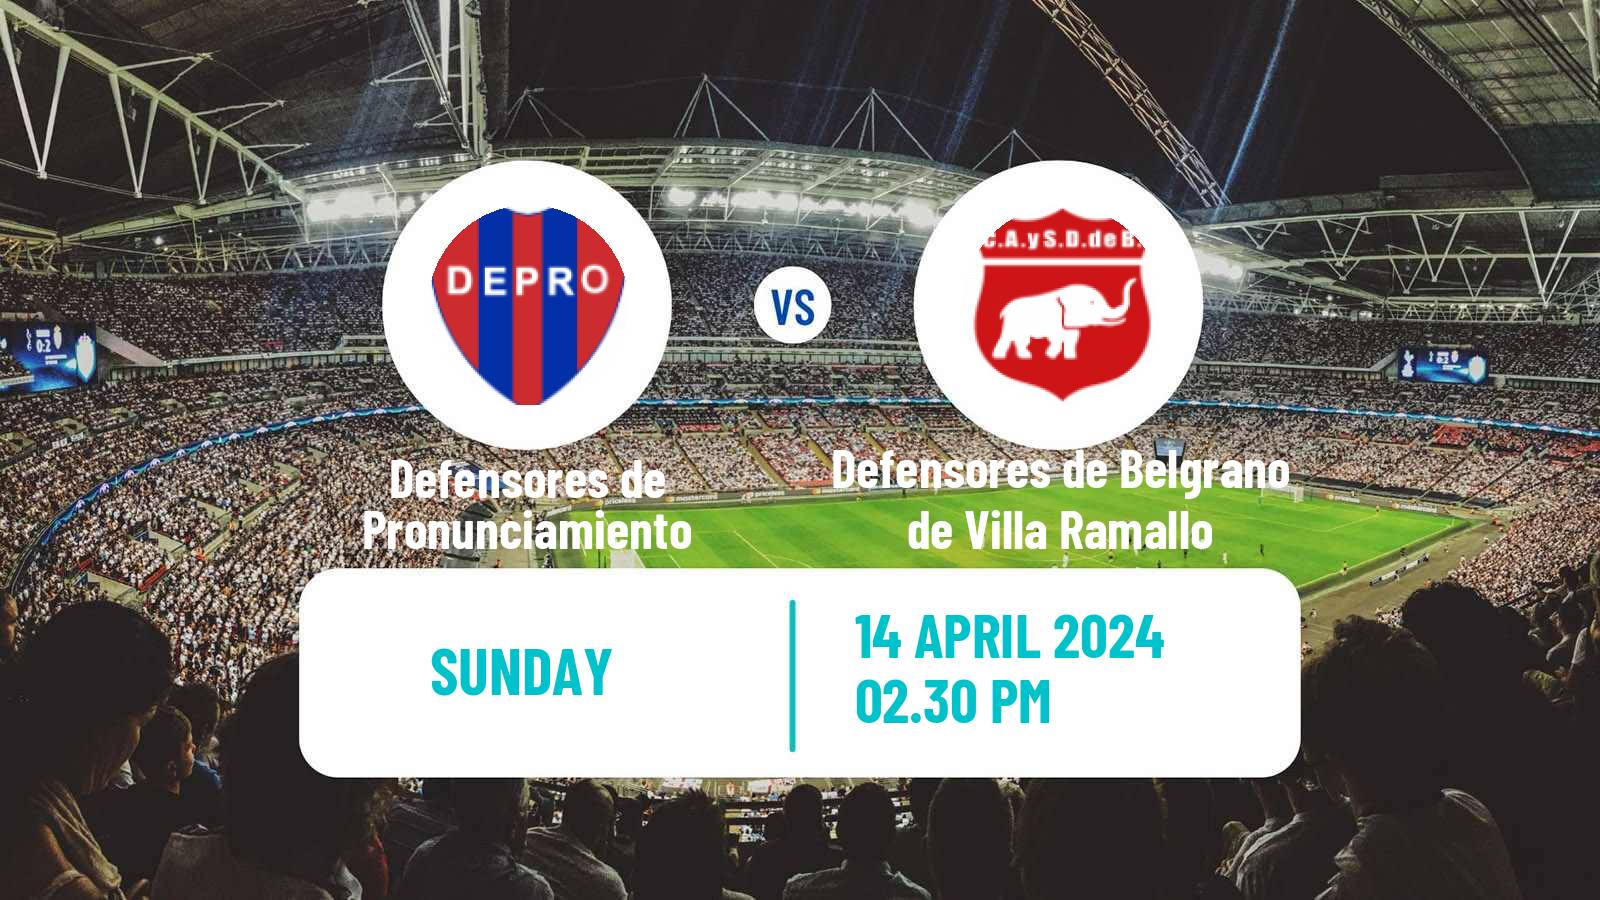 Soccer Argentinian Torneo Federal Defensores de Pronunciamiento - Defensores de Belgrano de Villa Ramallo